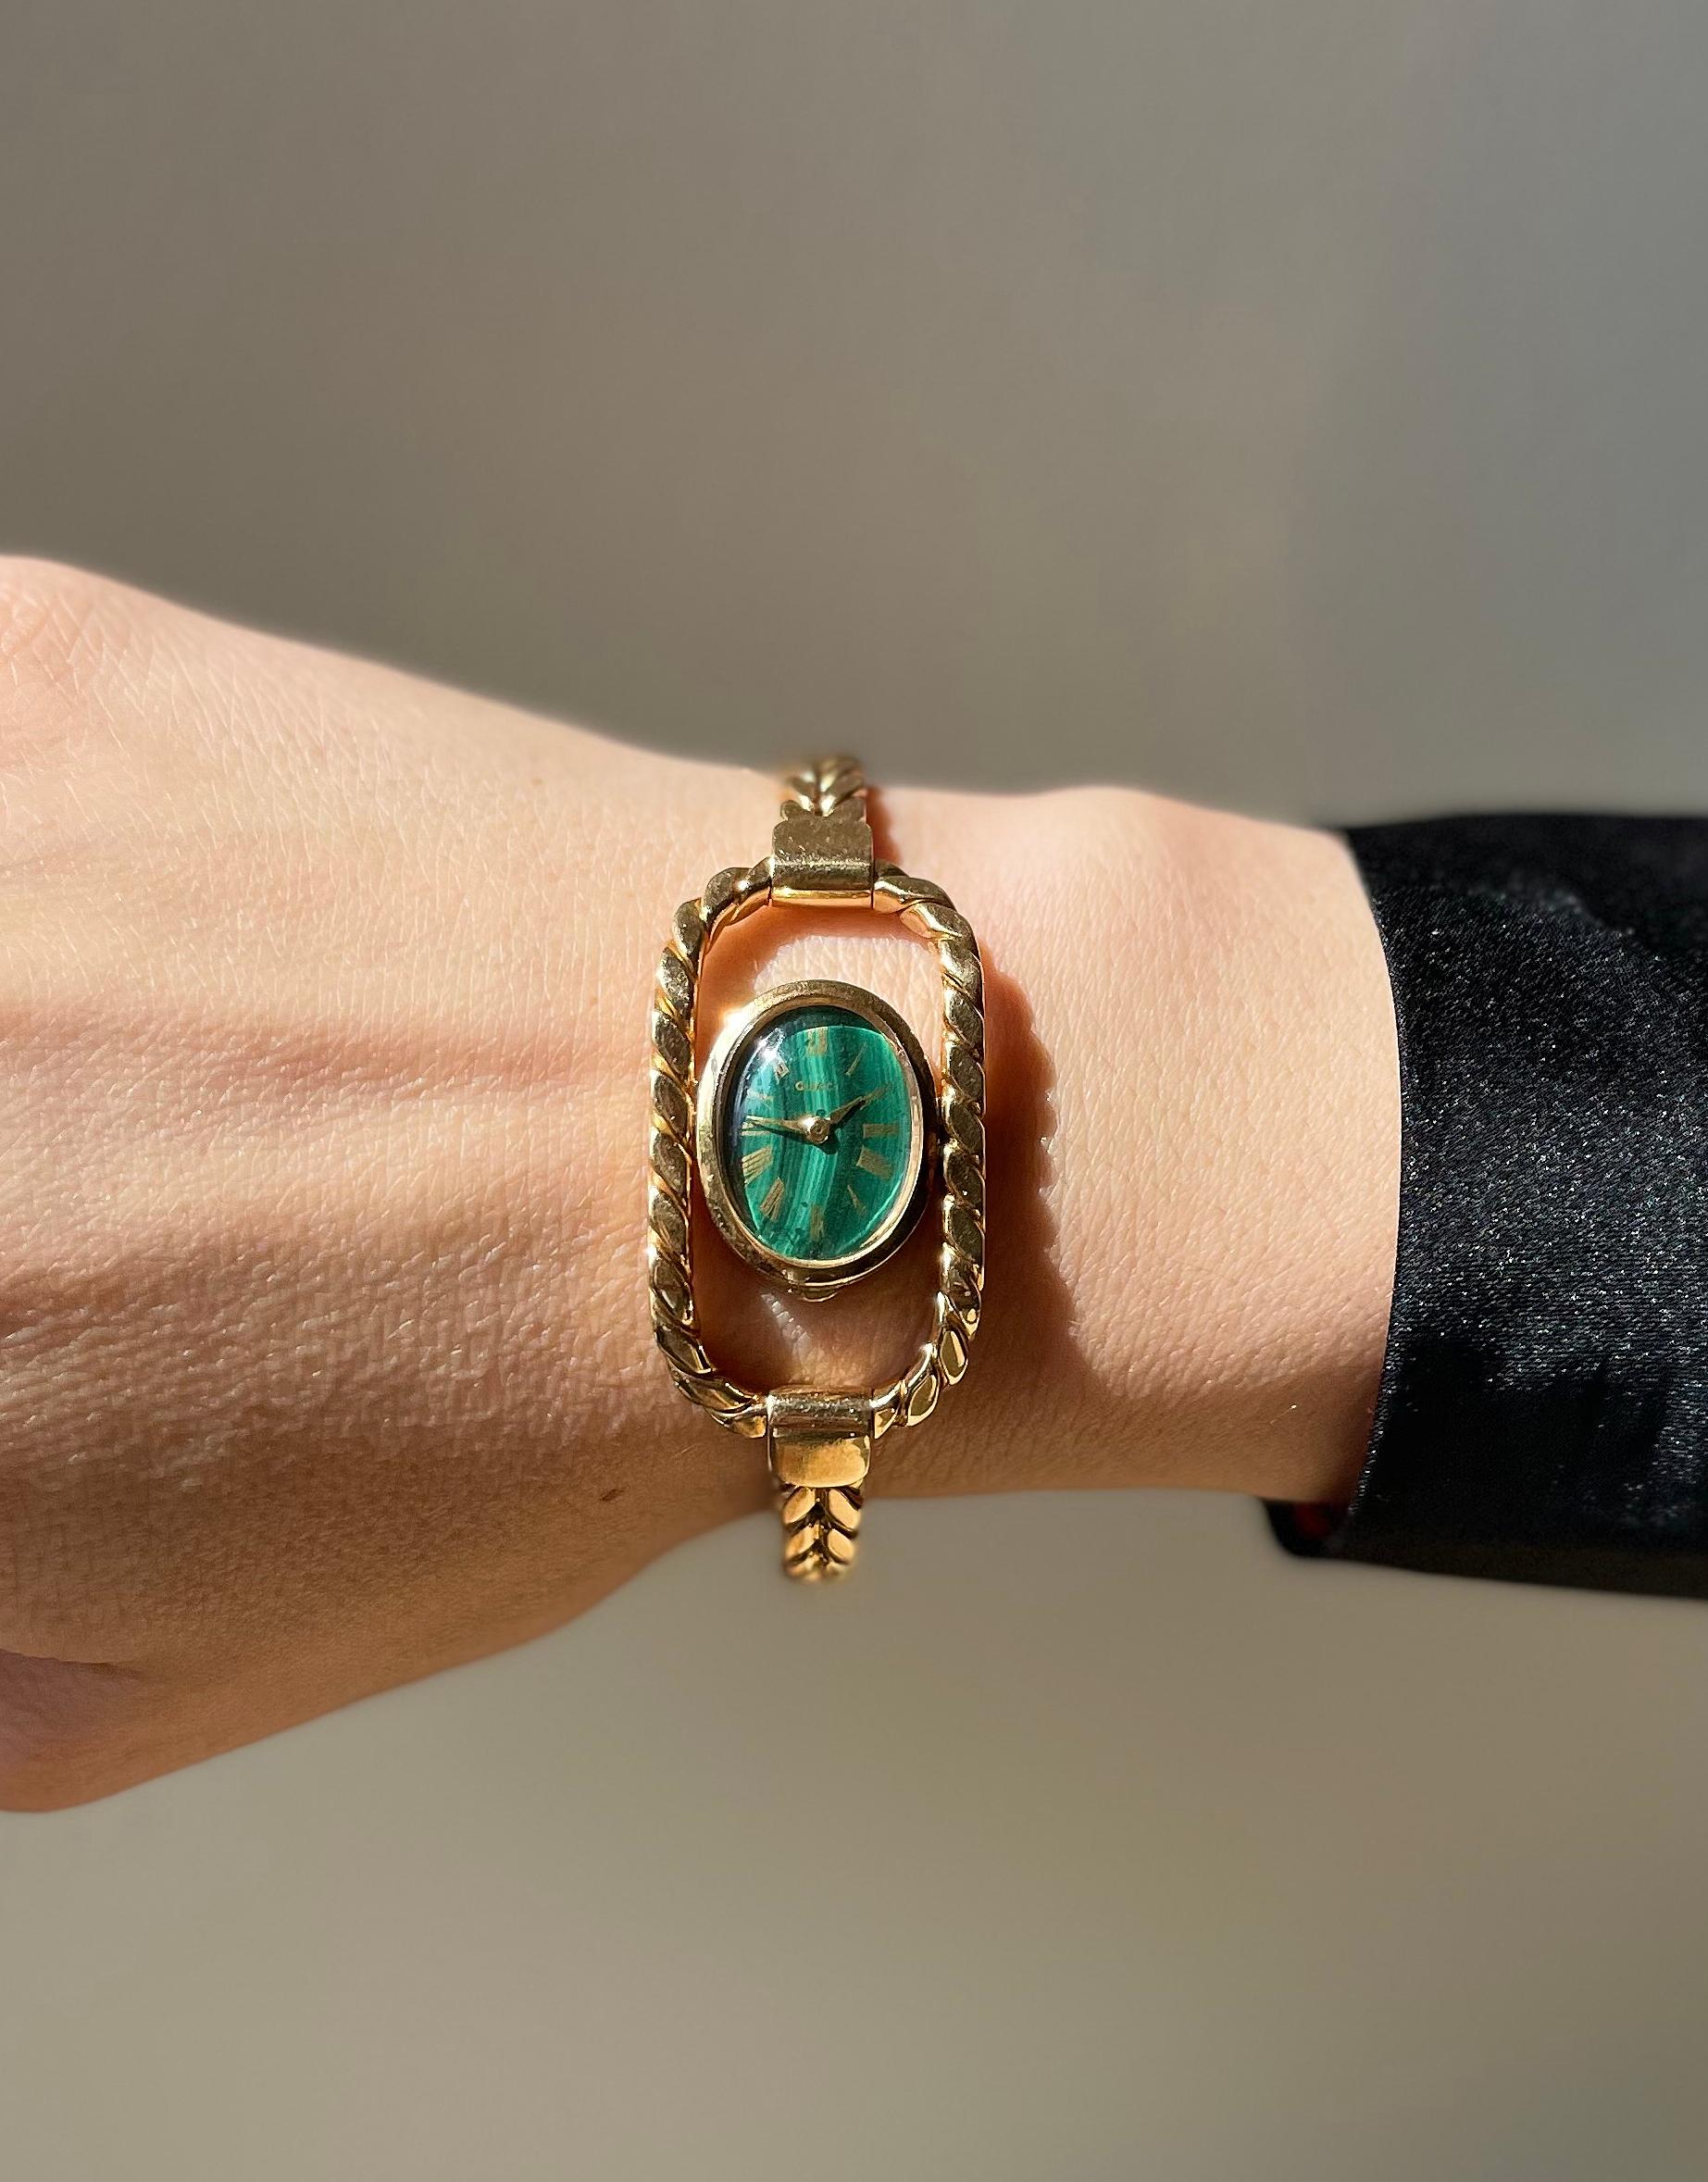 Vintage CIRCA 1970er Gucci Armbanduhr aus 18k Gold mit Malachit-Zifferblatt. Das Armband passt an ein Handgelenk von ca. 7